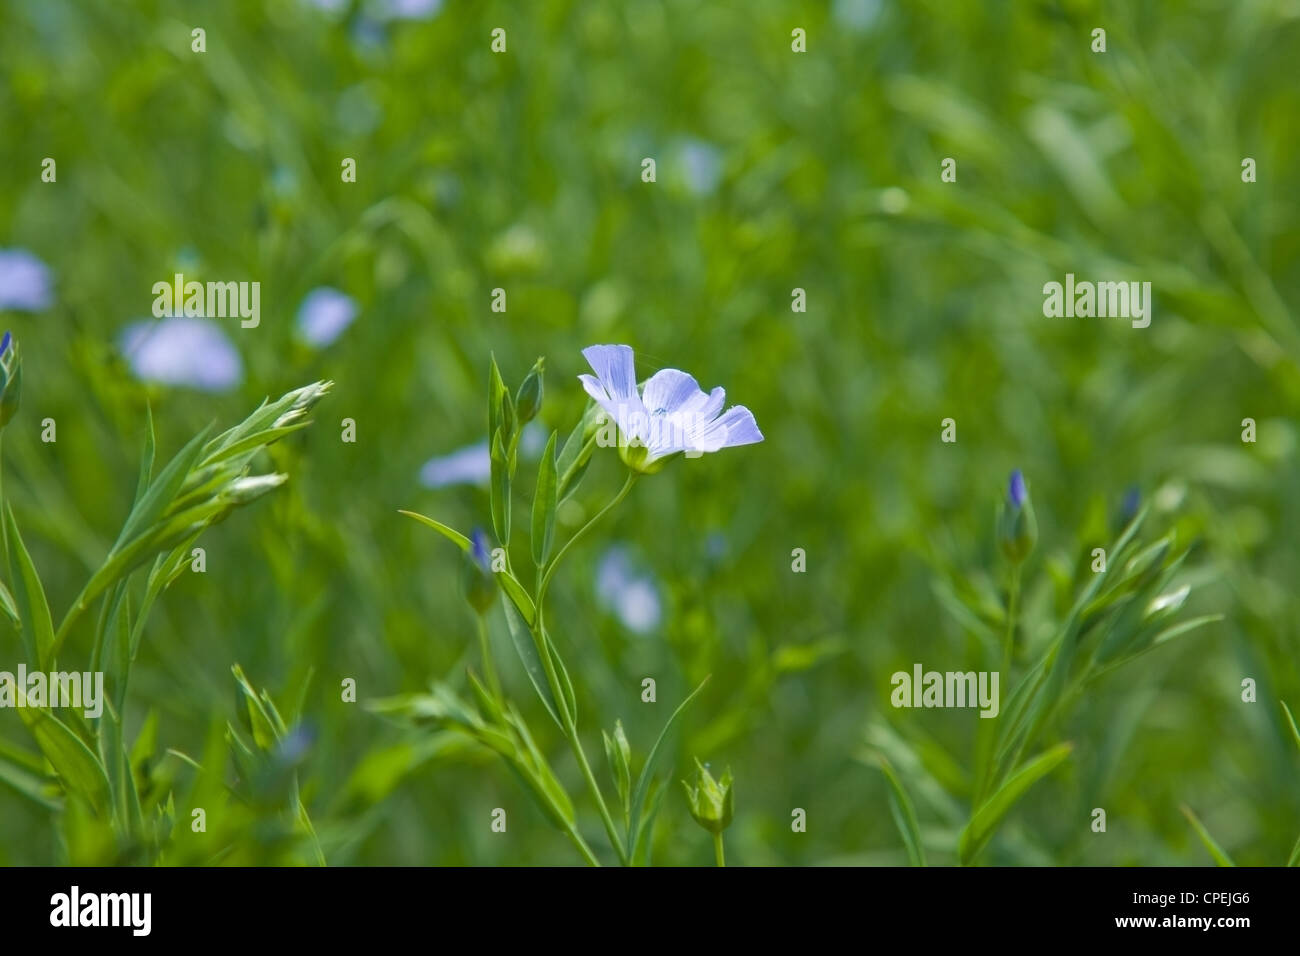 flax plants (Linum usitatissimum) Stock Photo